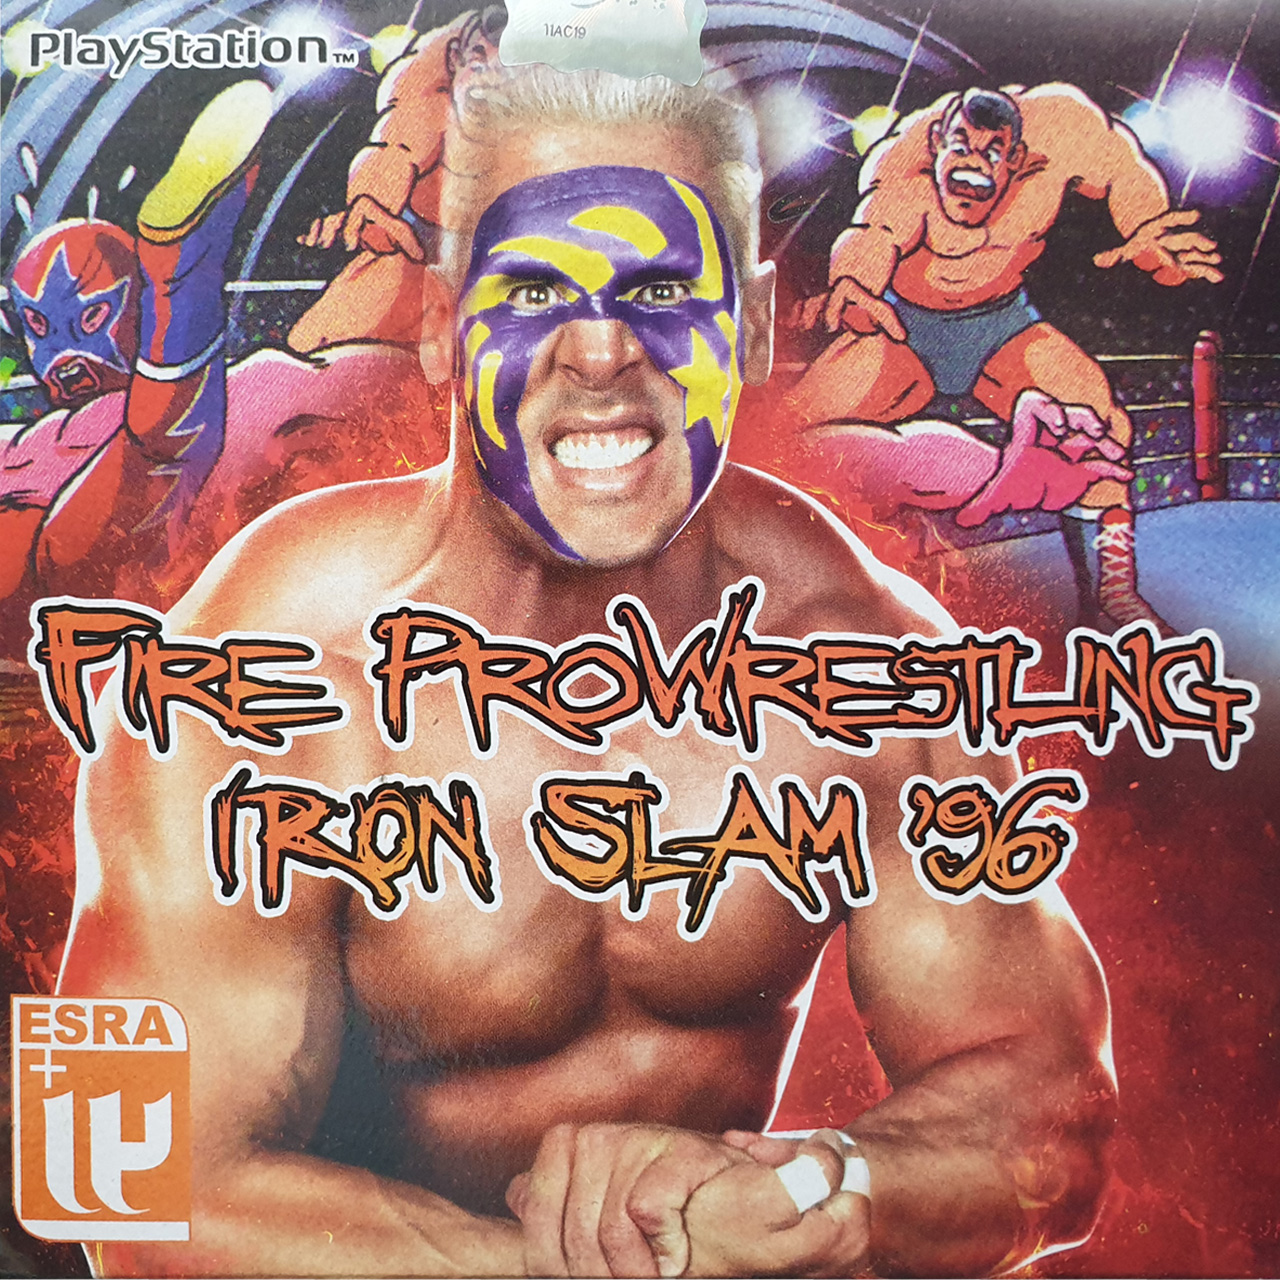 بازی Fire Pro Wrestling Iron Slam 96 مخصوص PS1